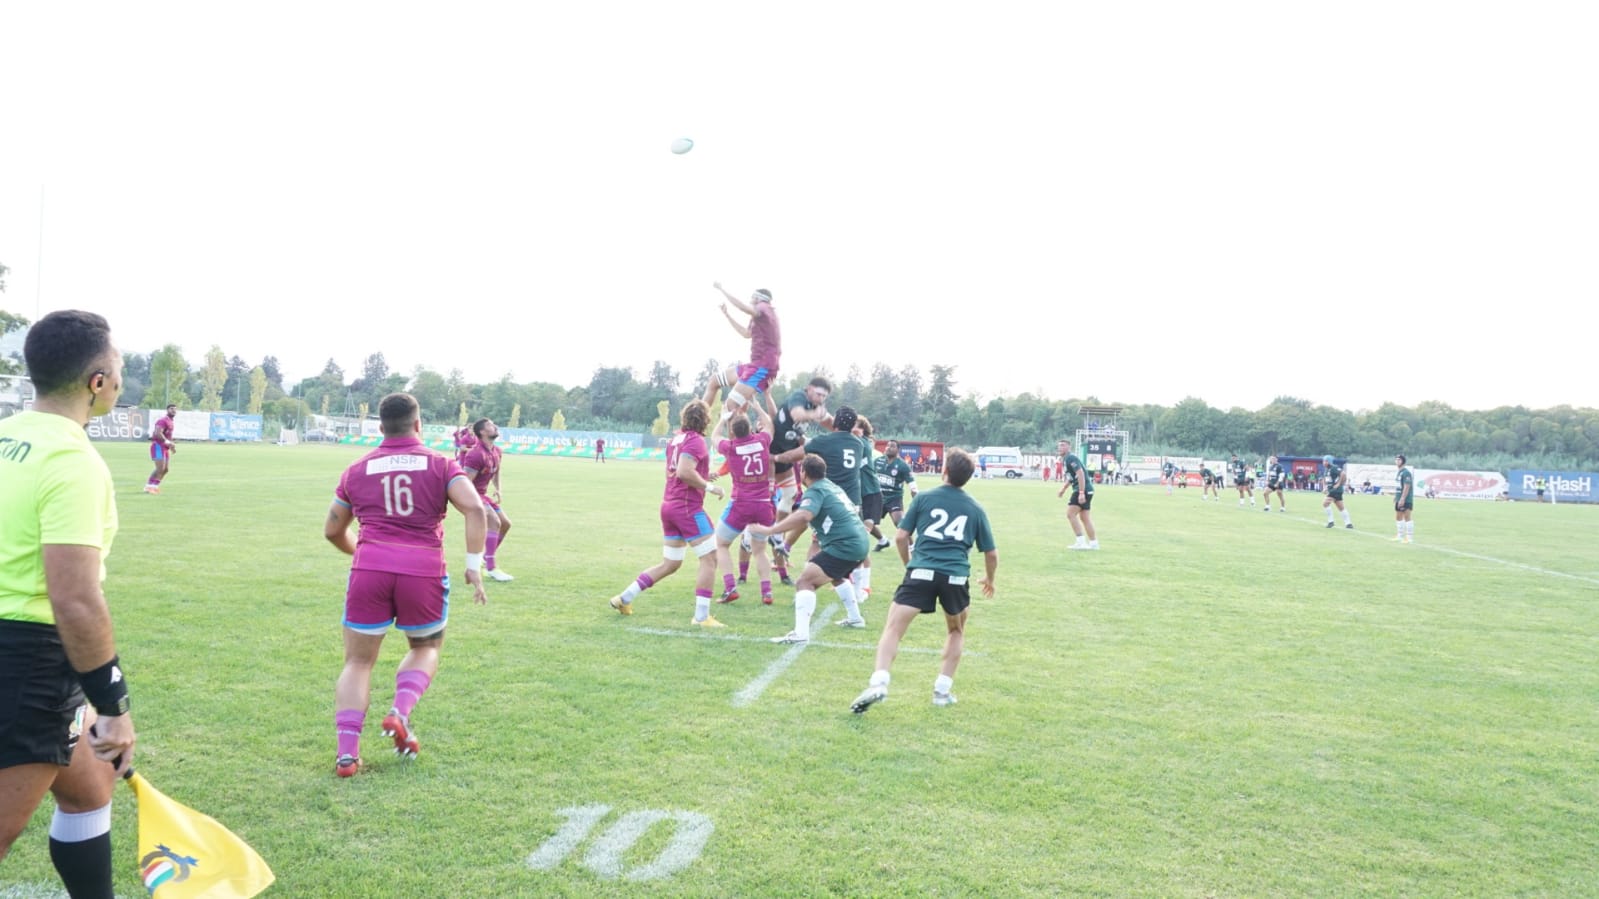 Incontro di rugby Fiamme Oro-Colorno a S. Benedetto del Tronto 11-9-2021